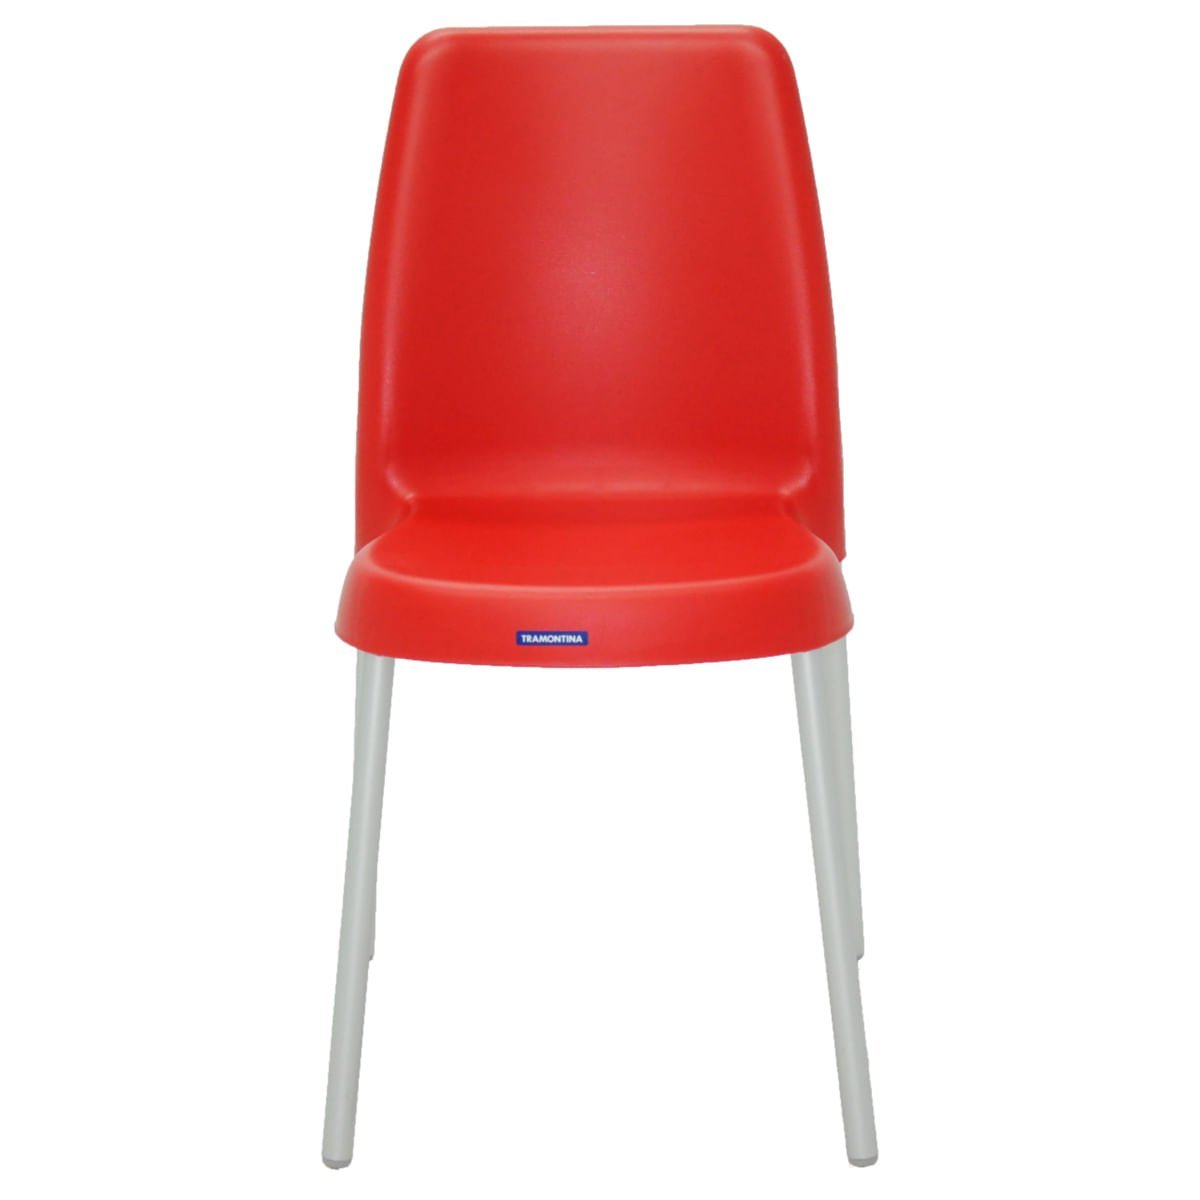 Cadeira Tramontina Vanda em Polipropileno Vermelho com Pernas de Alumínio - 2